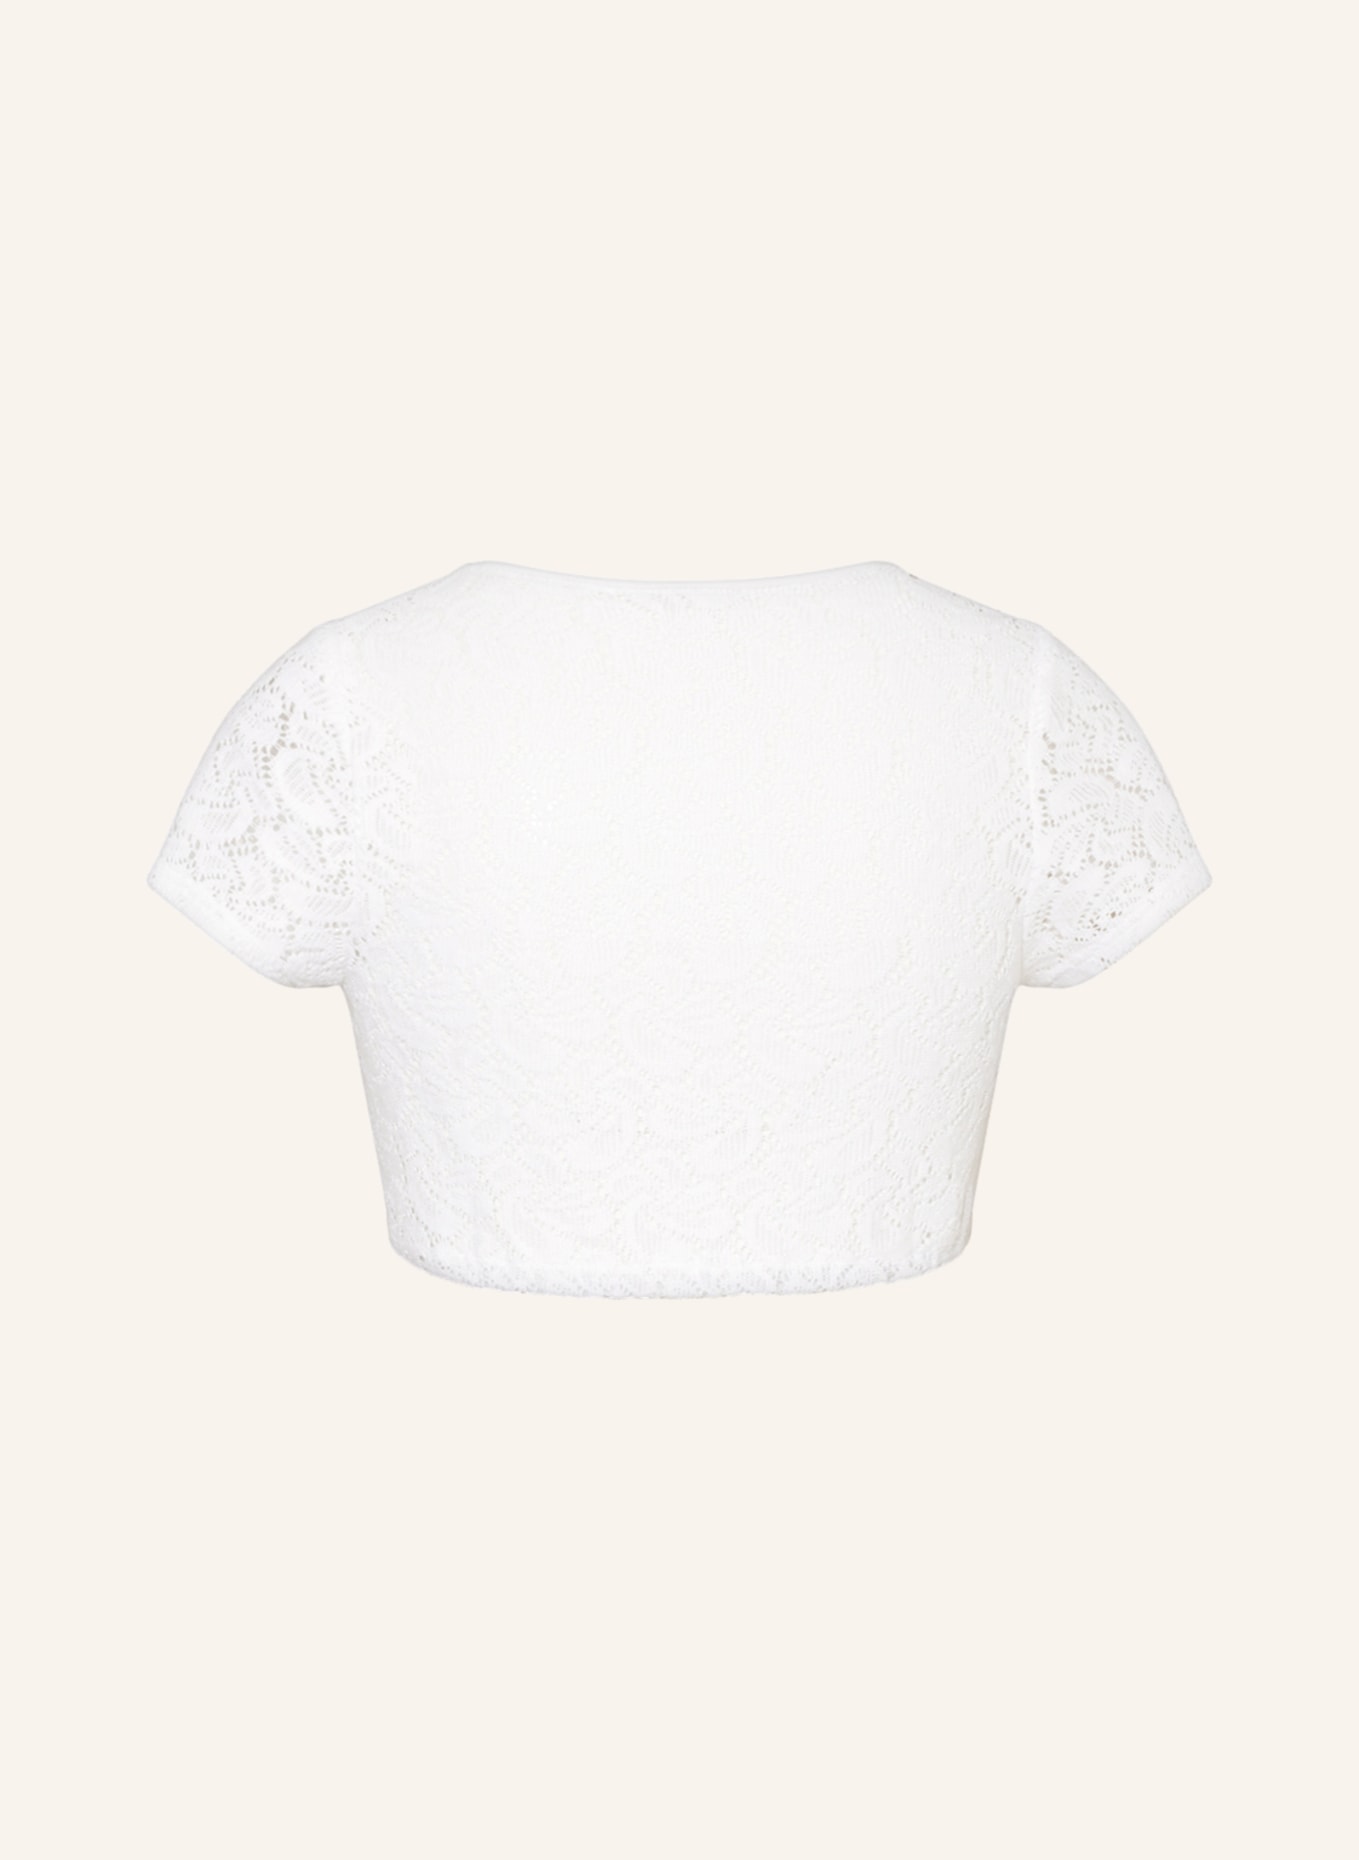 Hammerschmid Dirndl blouse GERLINDE, Color: WHITE (Image 2)